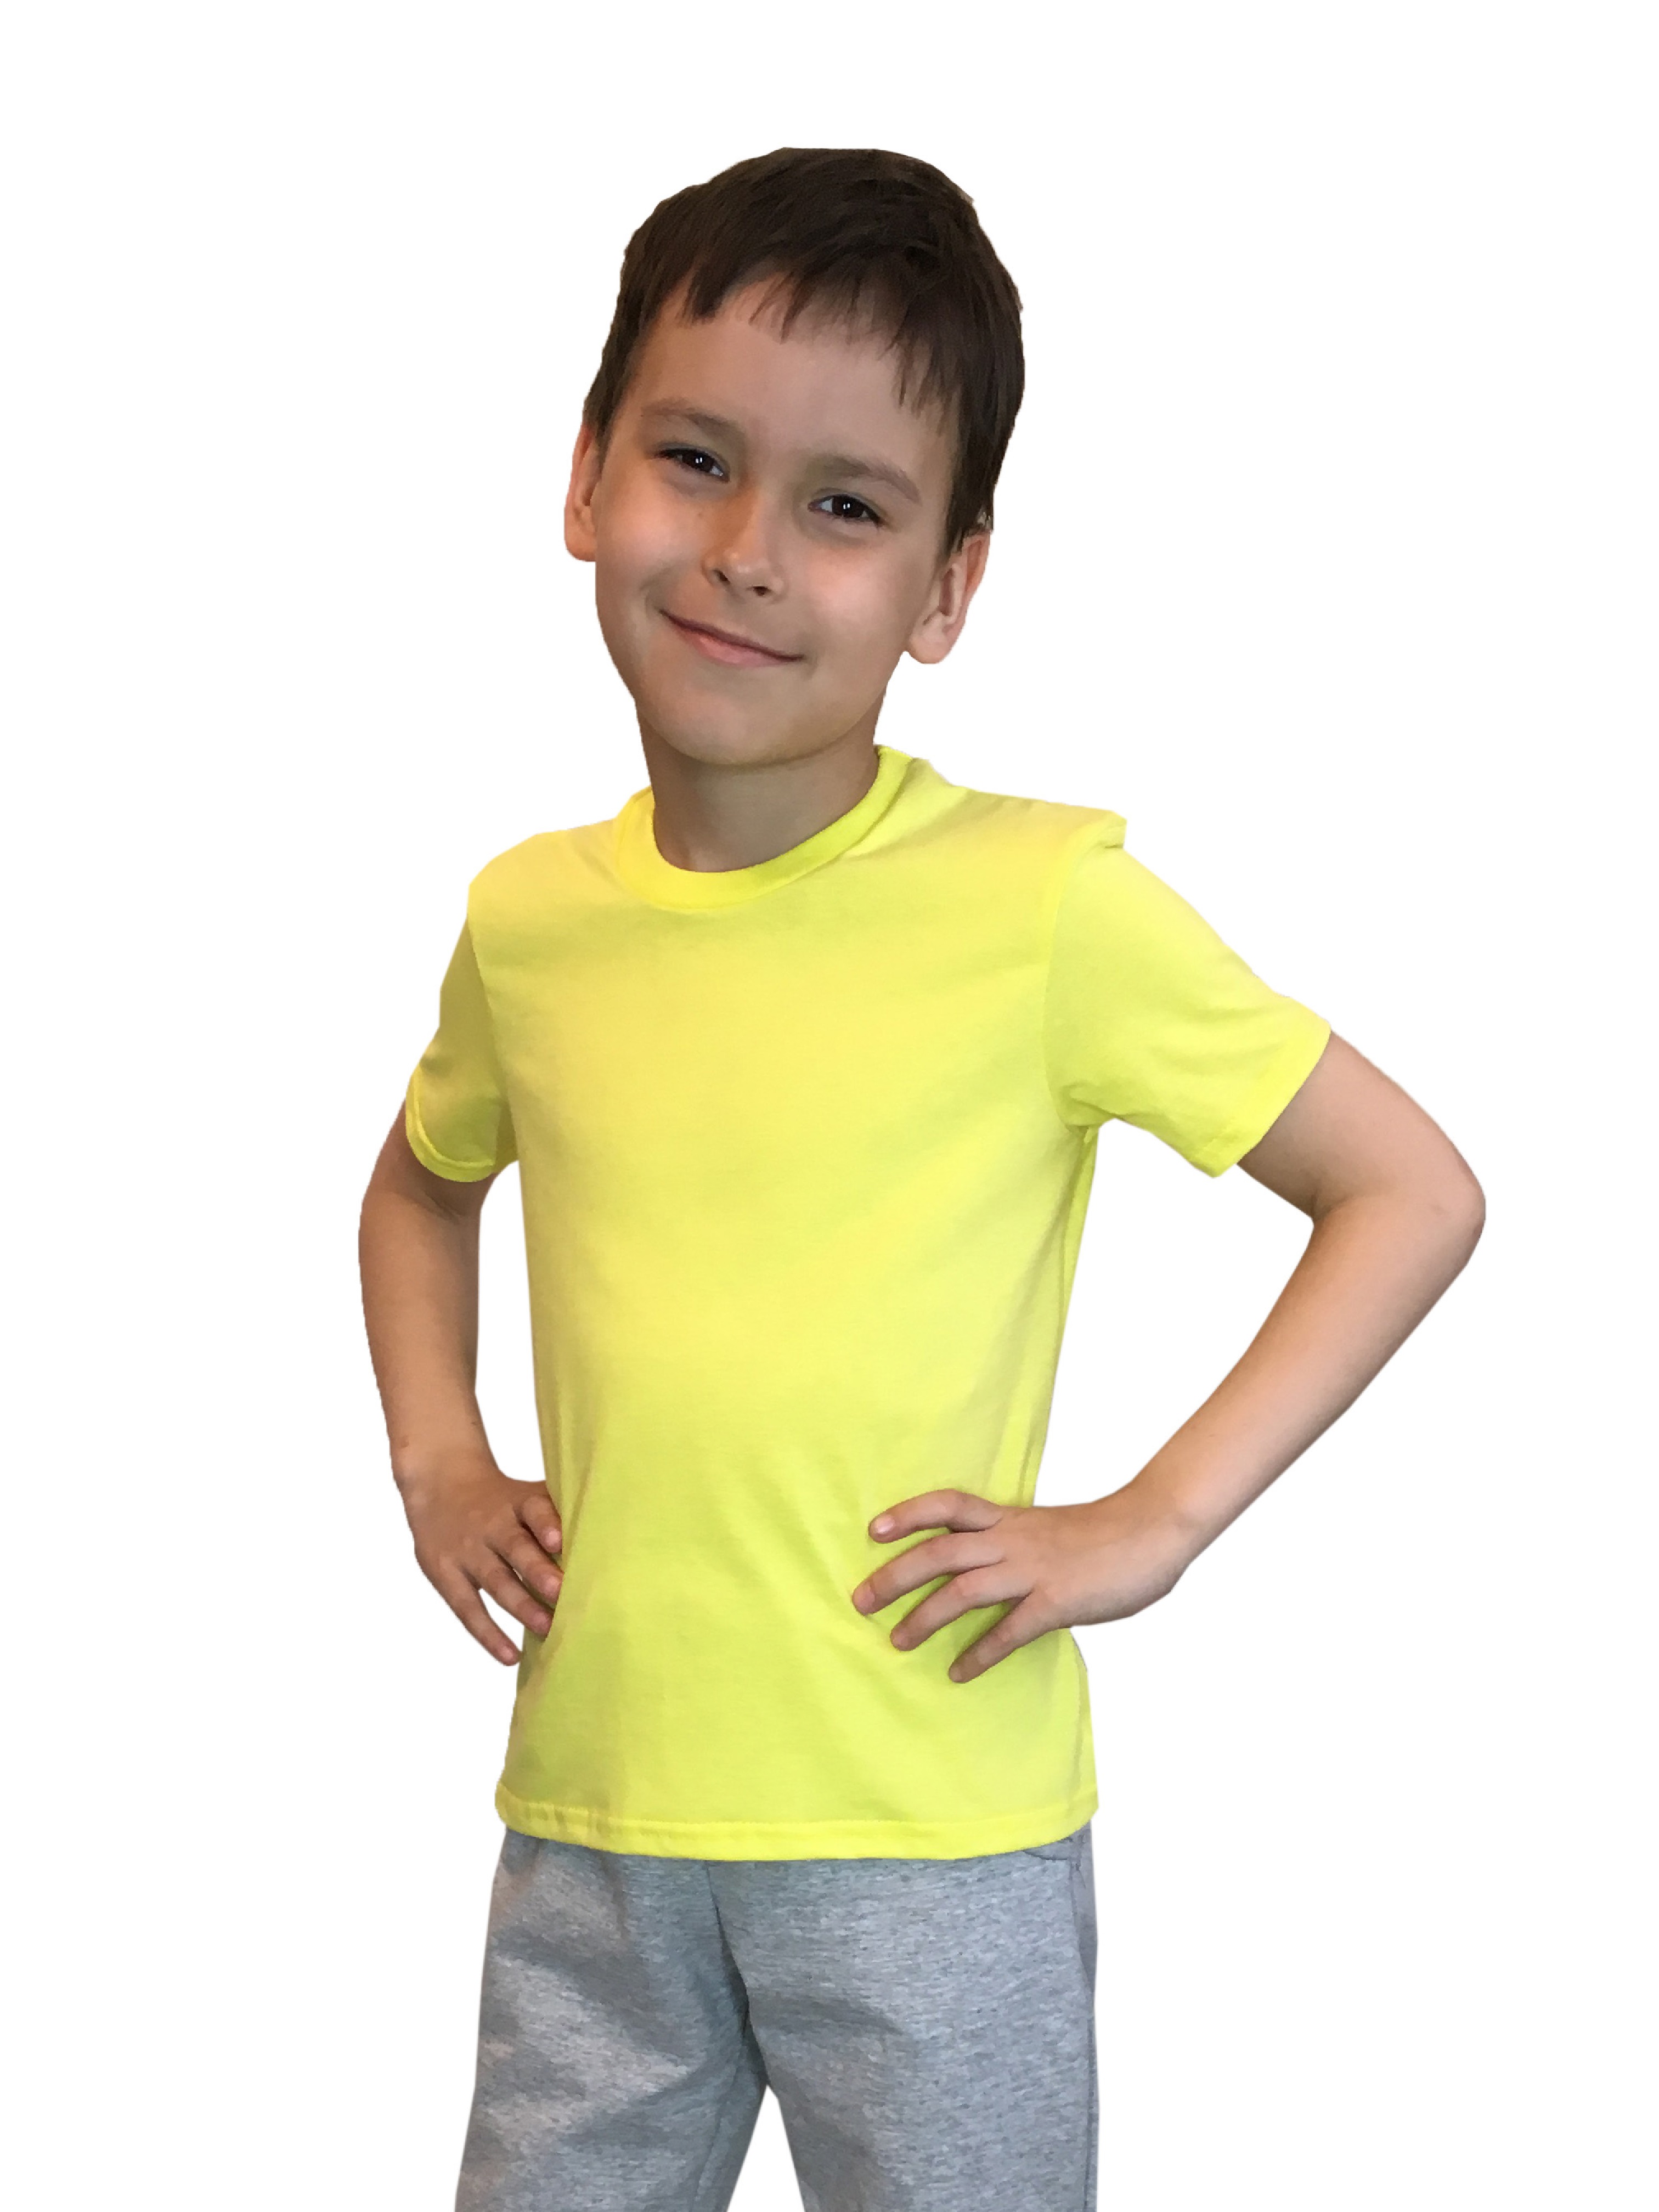 Футболка детская Детрик, желтая размер 110, Ф-1-55